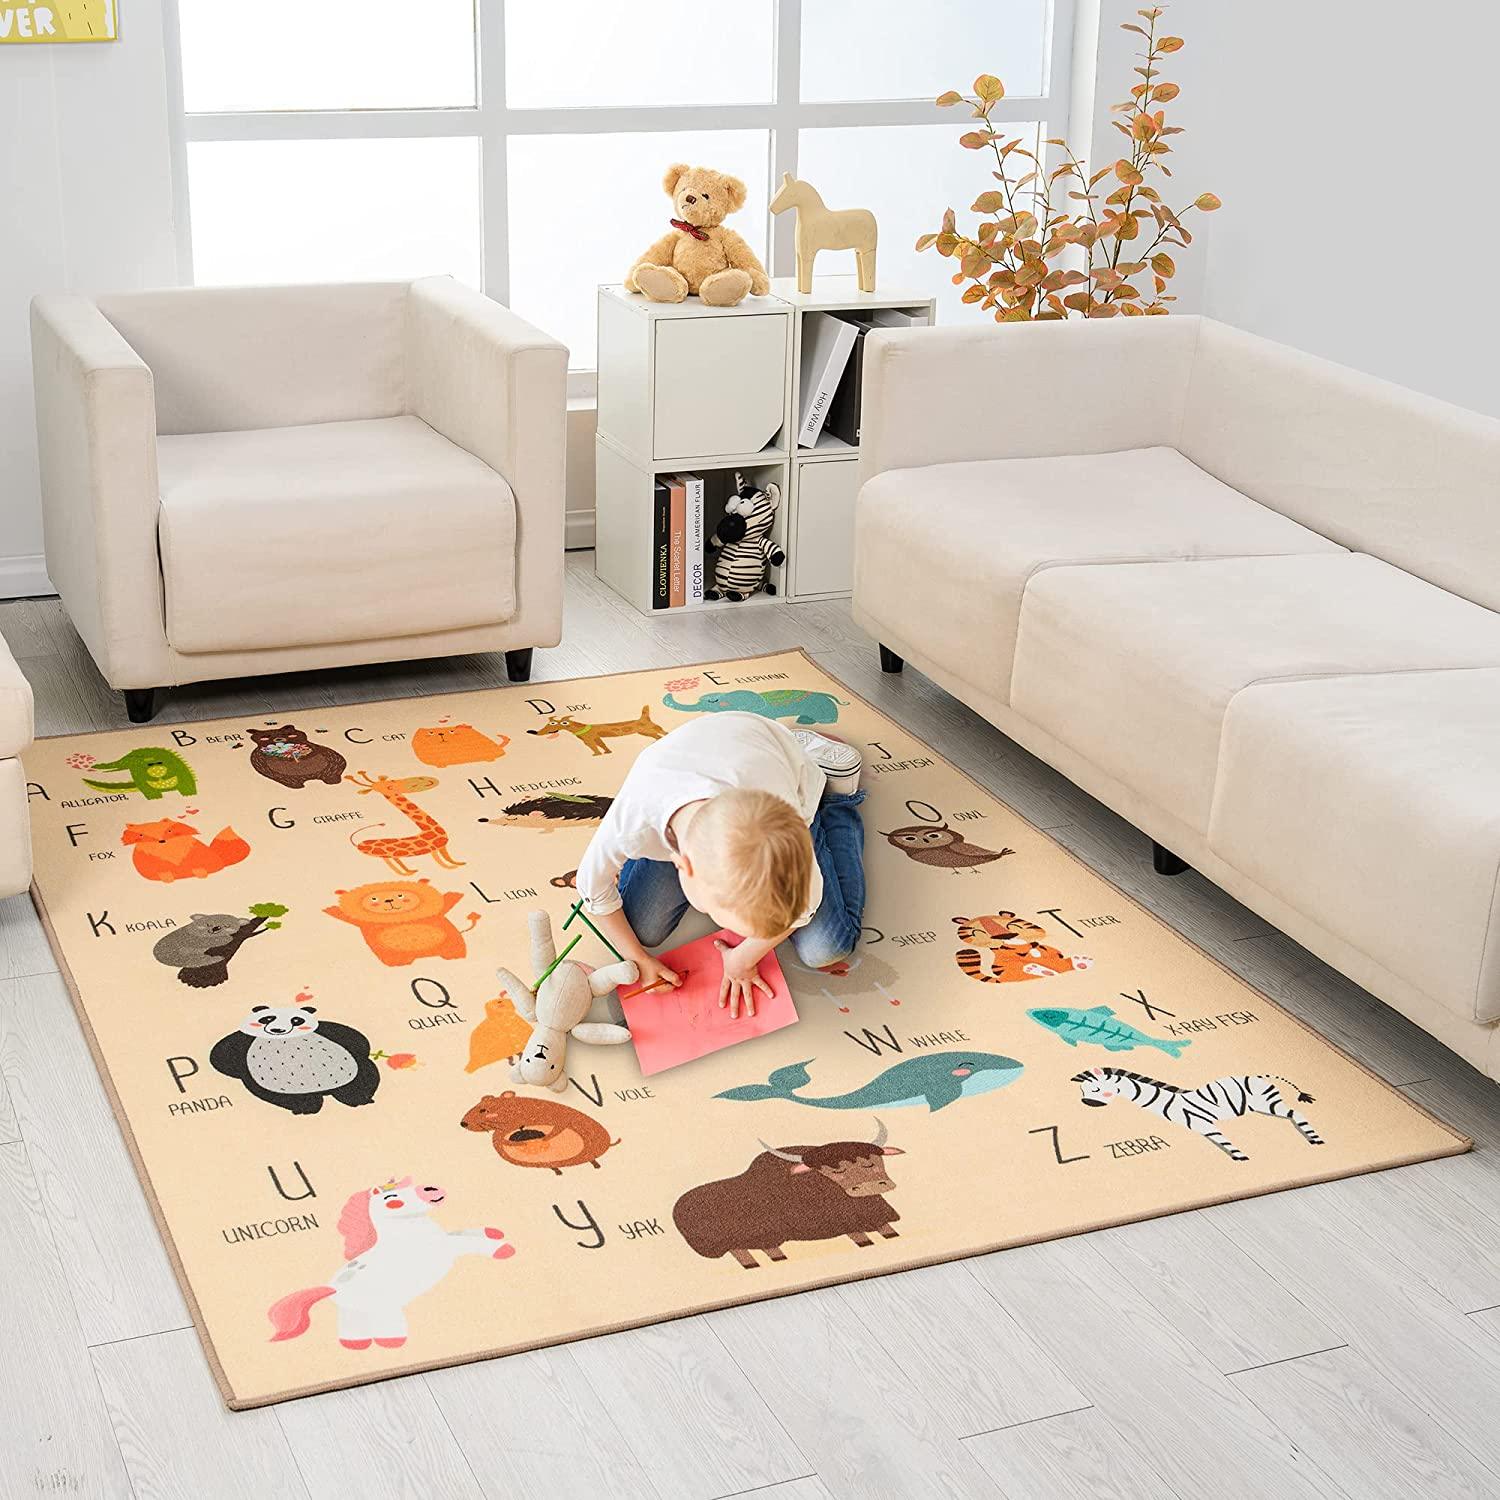 59"x79"Numbers and Animal Educational Classroom Rug for Playroom - BooooomJackson-Kids Rugs Carpet